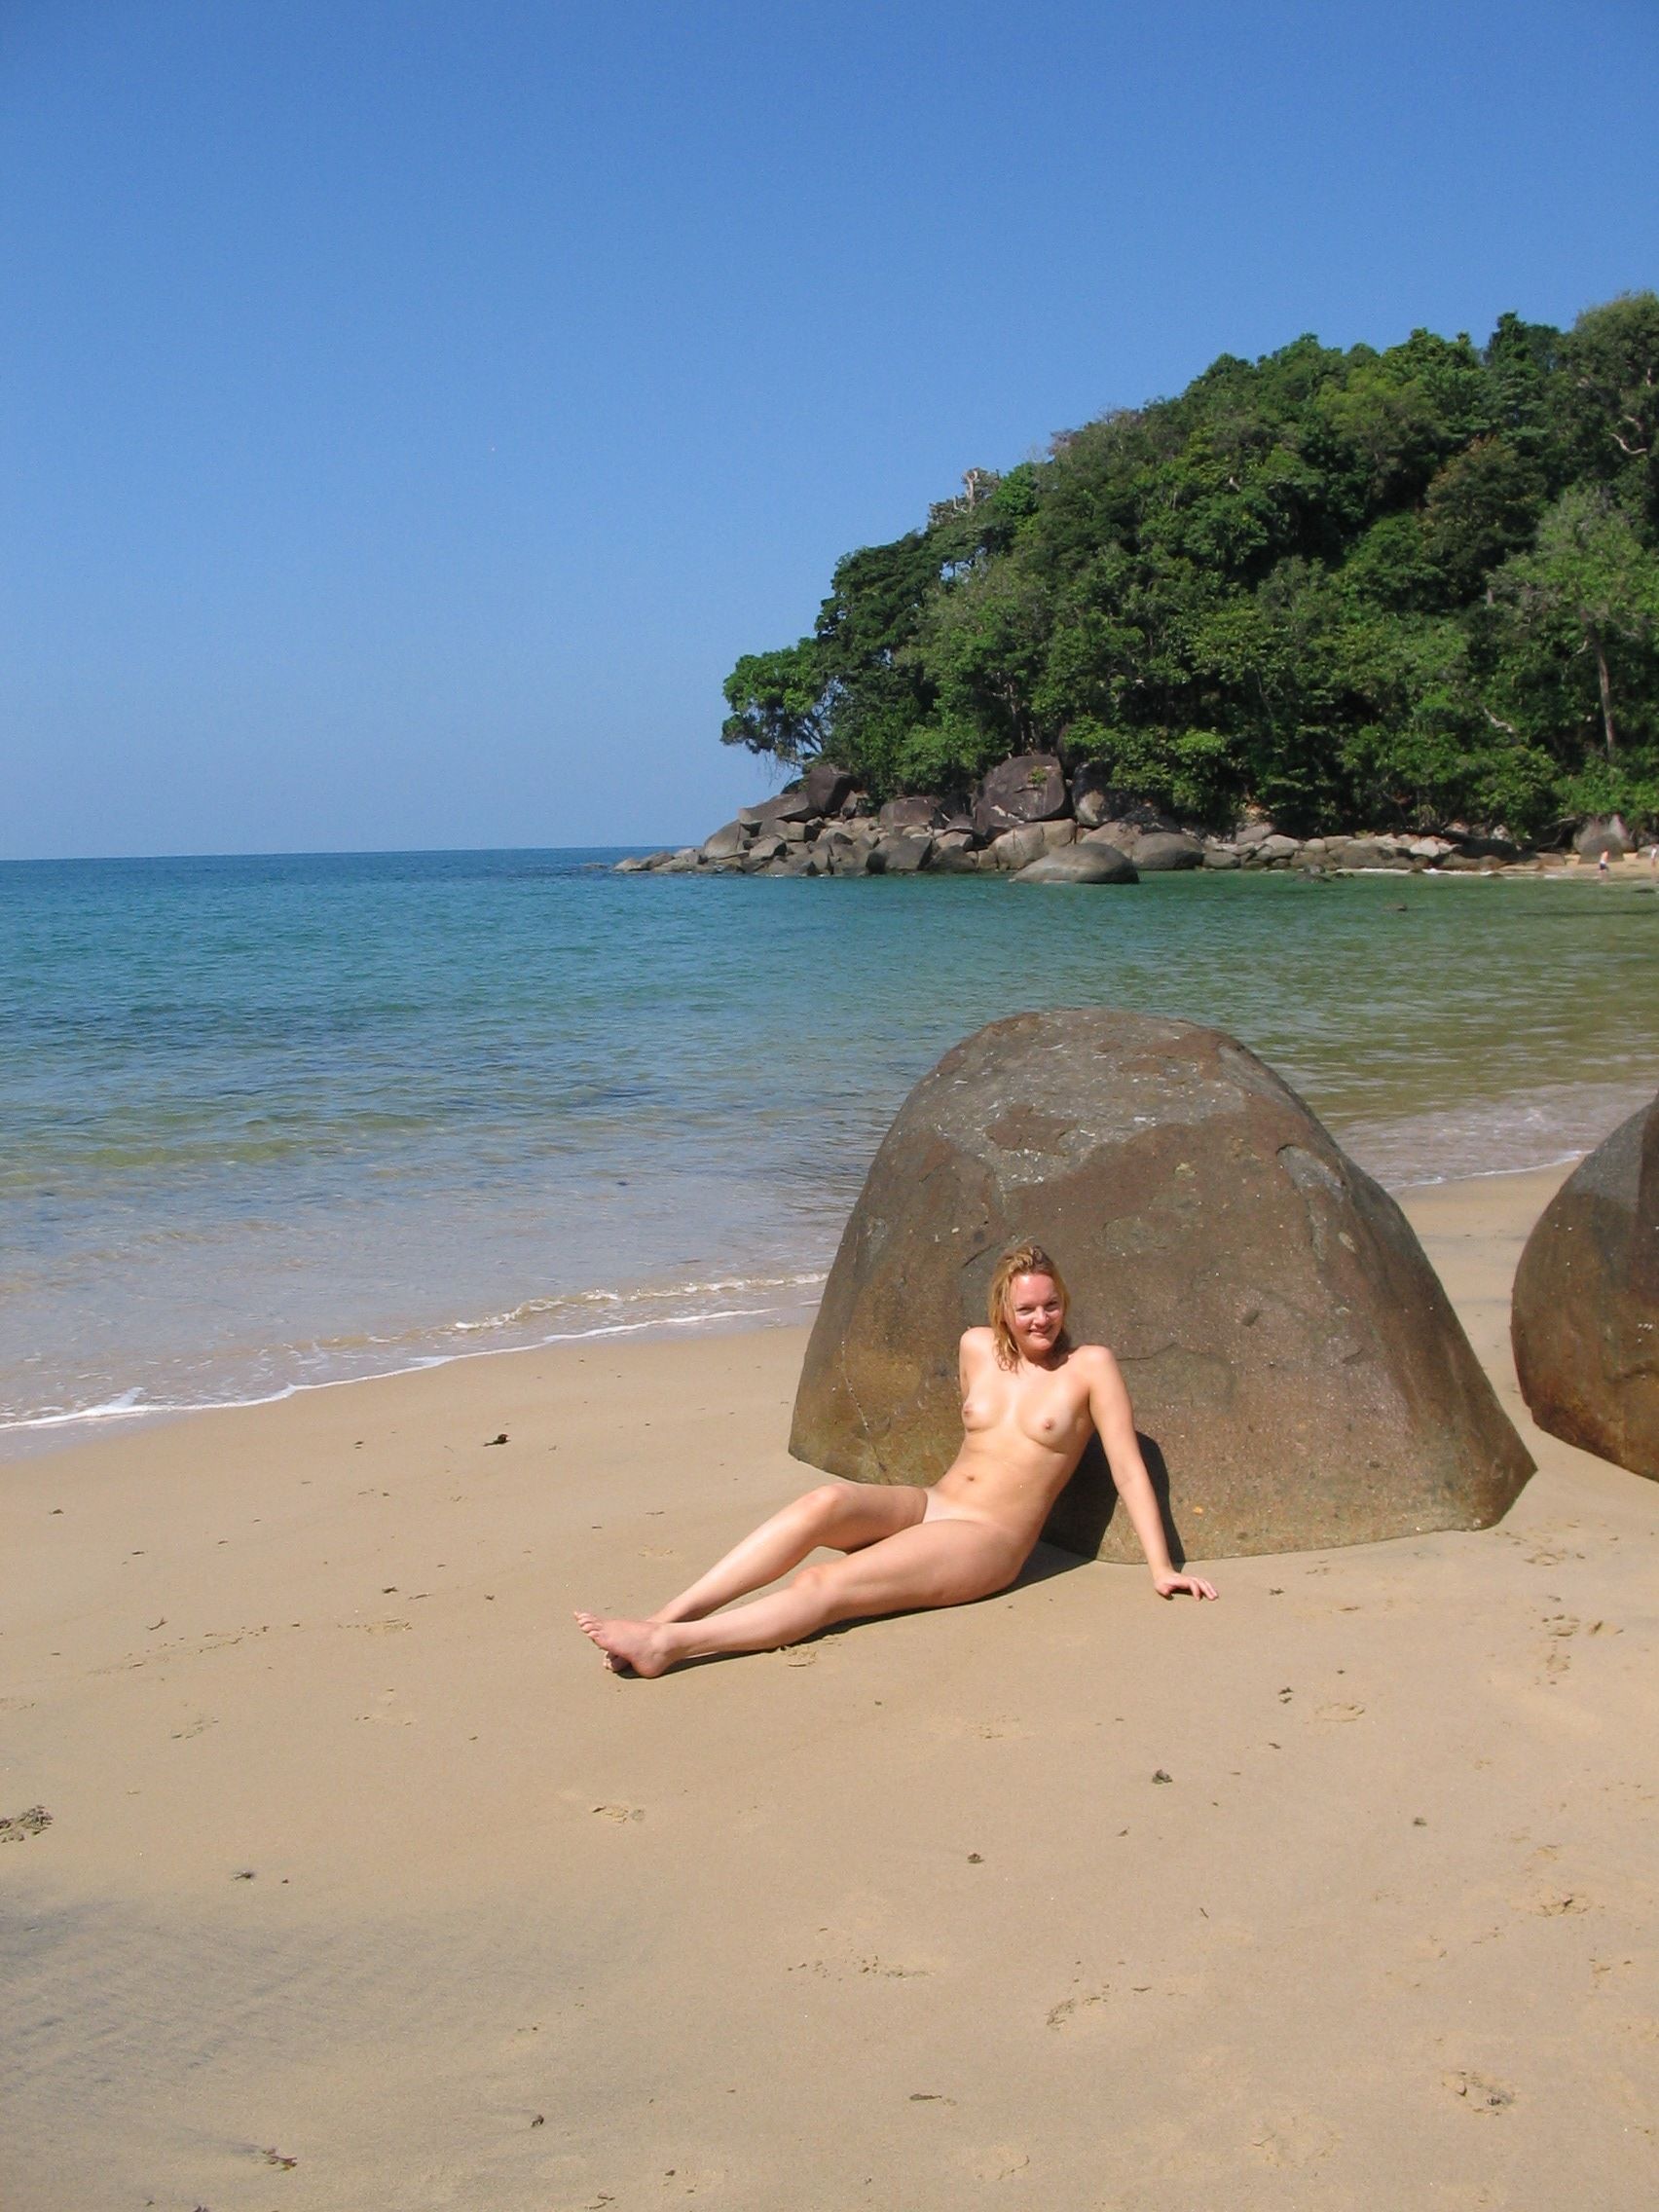 Nude Amateur Photos - Danish Babe On The Beach68